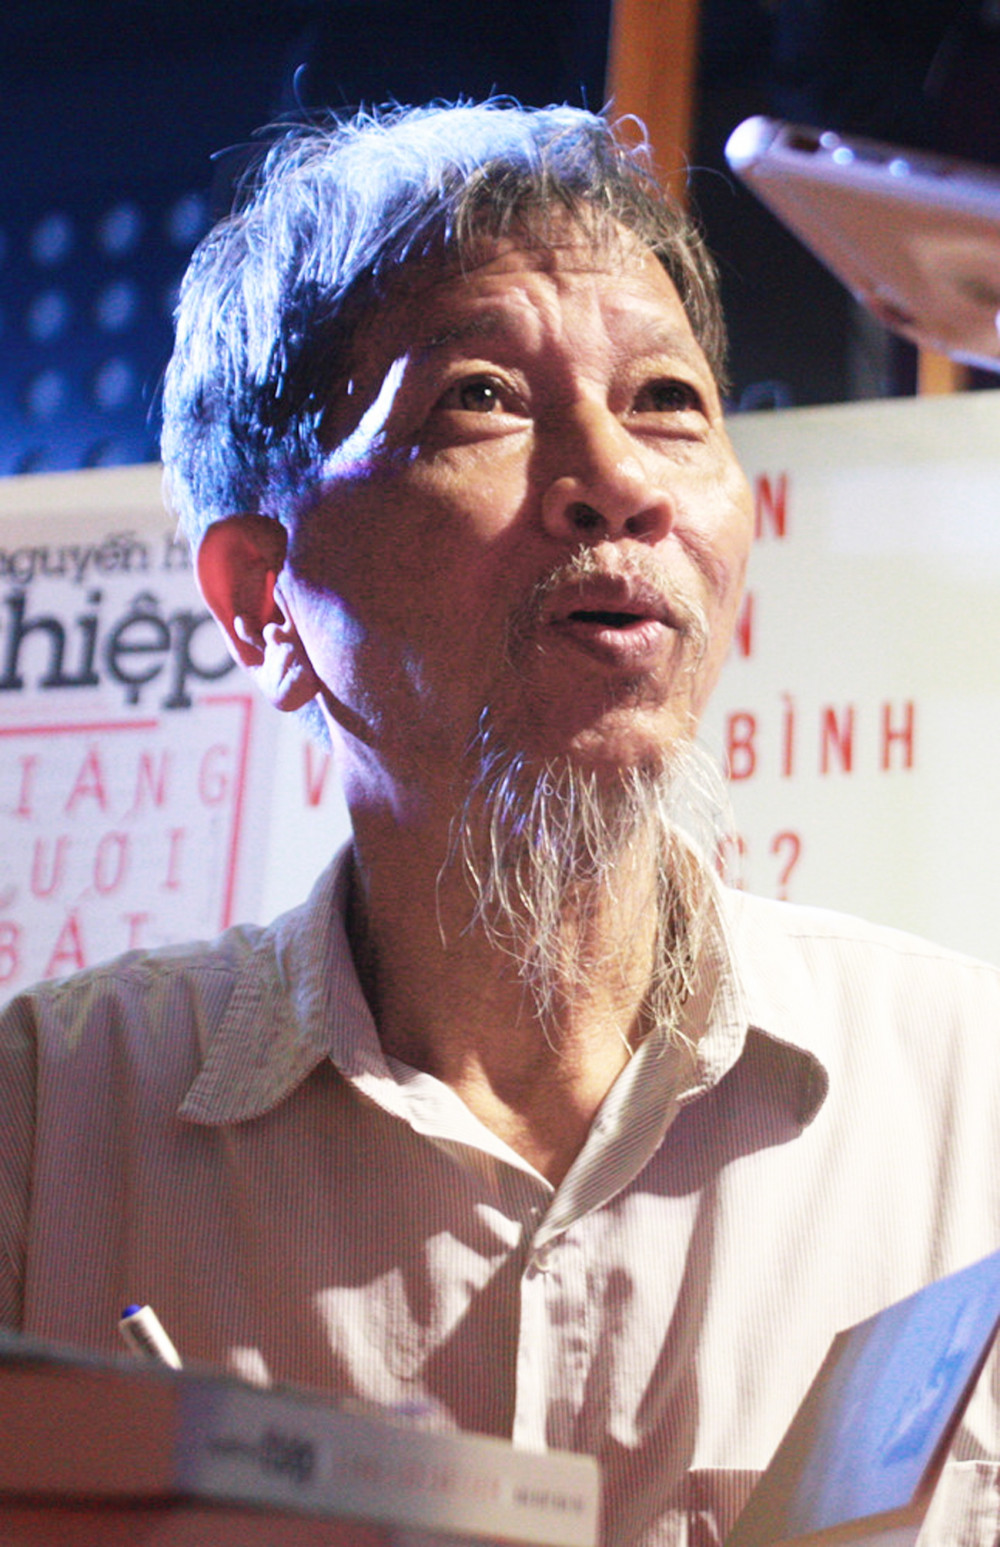 Nhà văn Nguyễn Huy Thiệp trong một sự kiện do NXB Trẻ tổ chức mấy năm trước, khi đó ông còn khỏe.